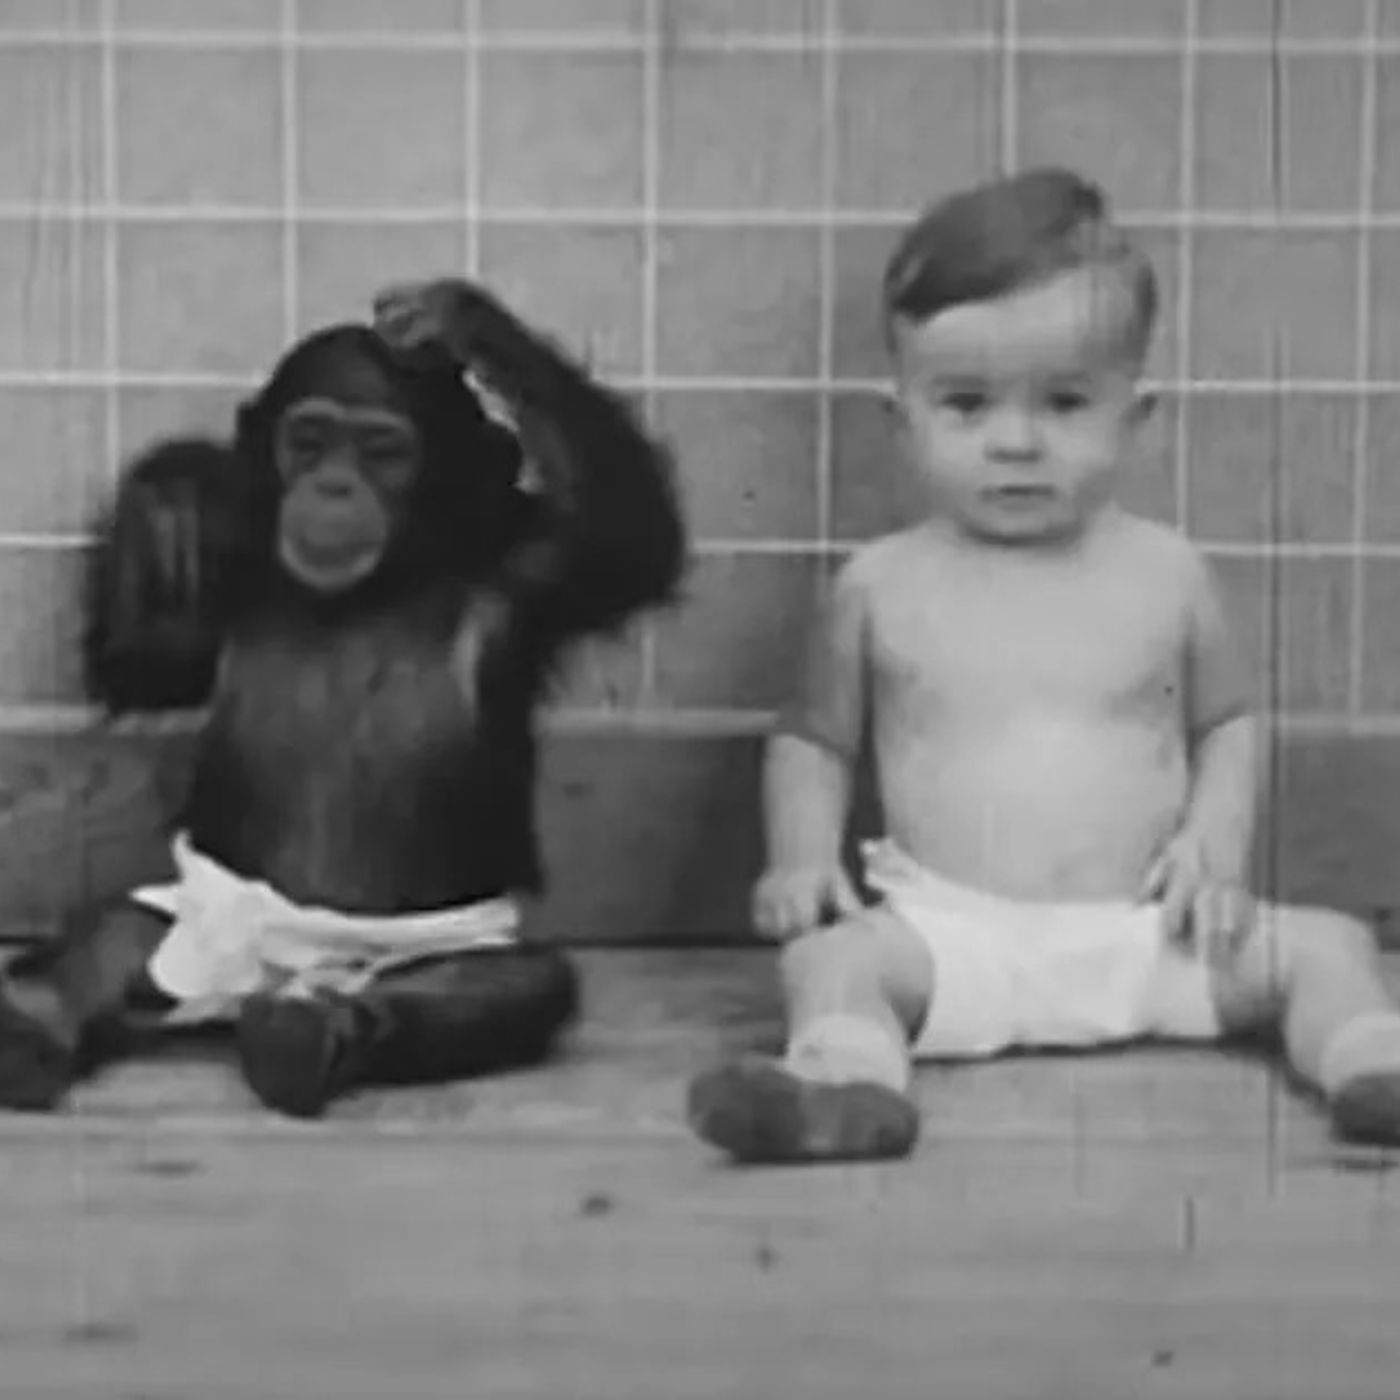 Un bambino e una scimmia, l'esperimento Kellogg - AperiStoria #161